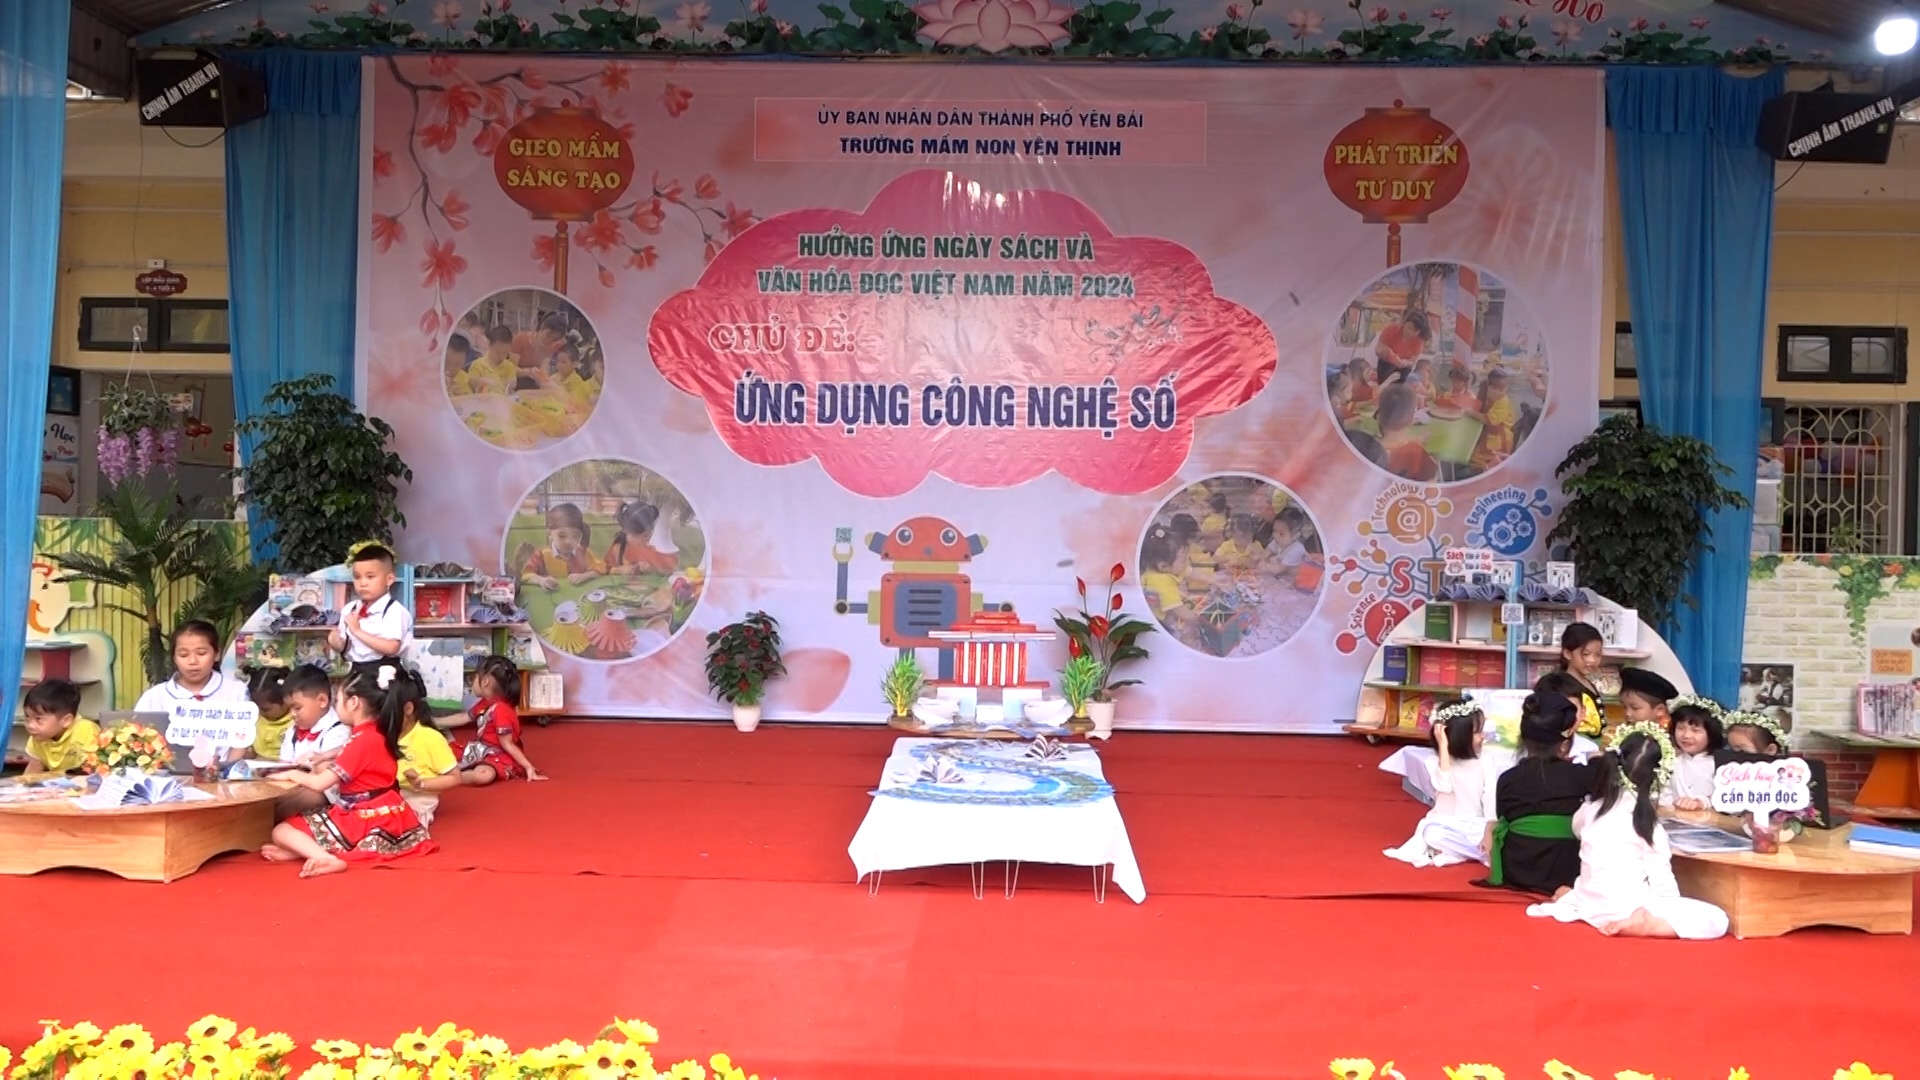 Trường Mầm non Yên Thịnh (TP Yên Bái) tổ chức Ngày Sách và văn hóa đọc năm 2024